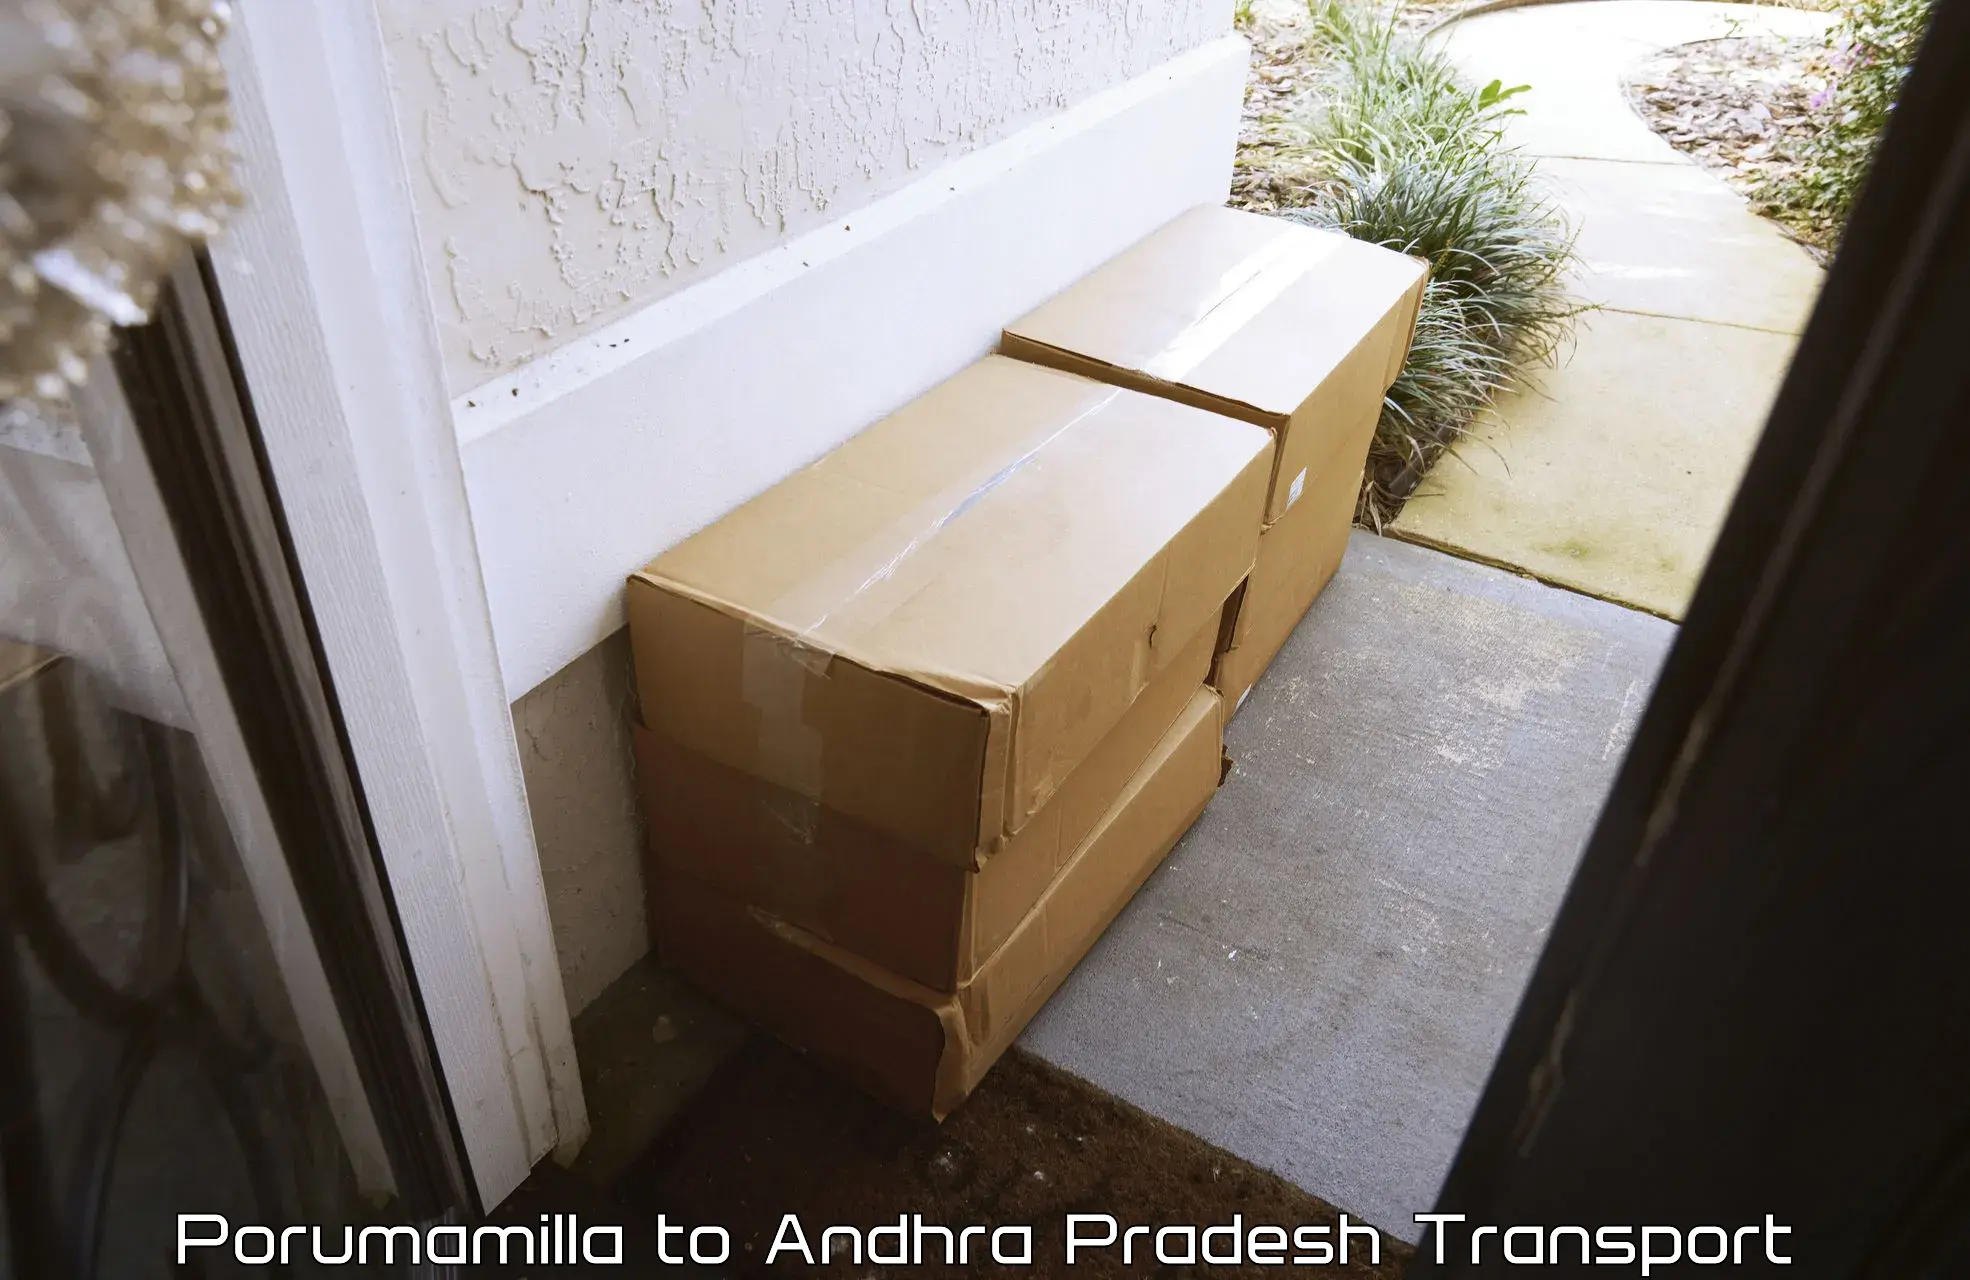 Goods delivery service Porumamilla to Andhra Pradesh